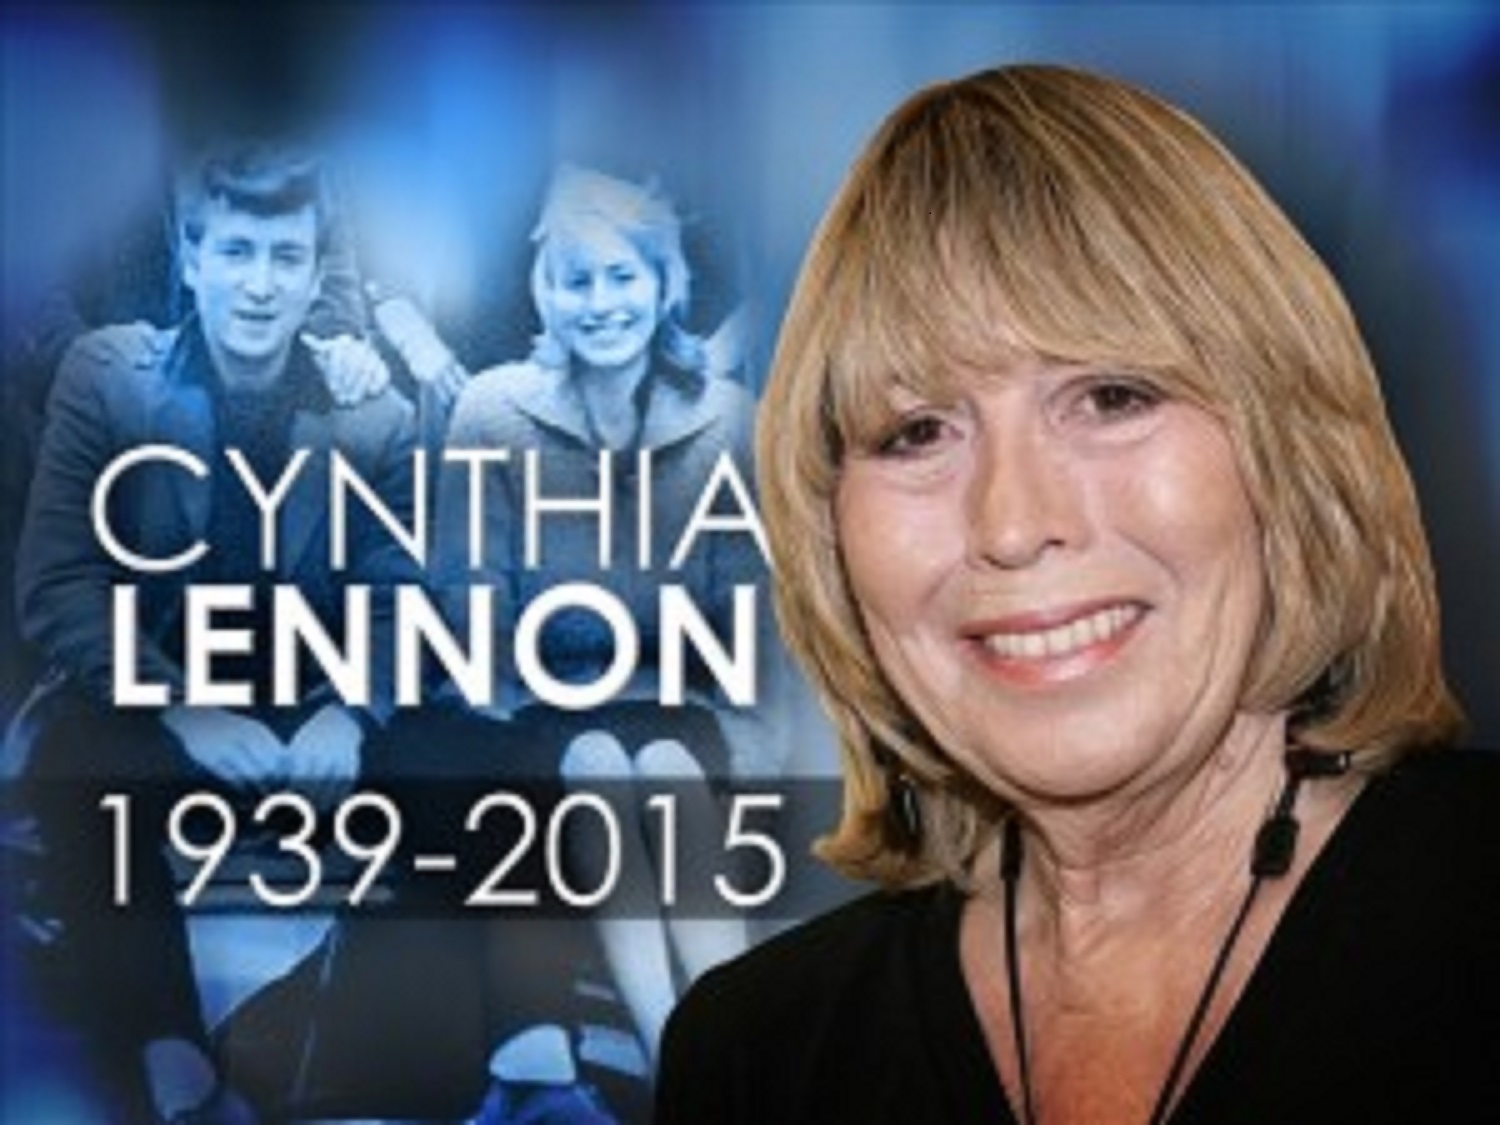 CYNTHIA LENNON 1939 - 2015